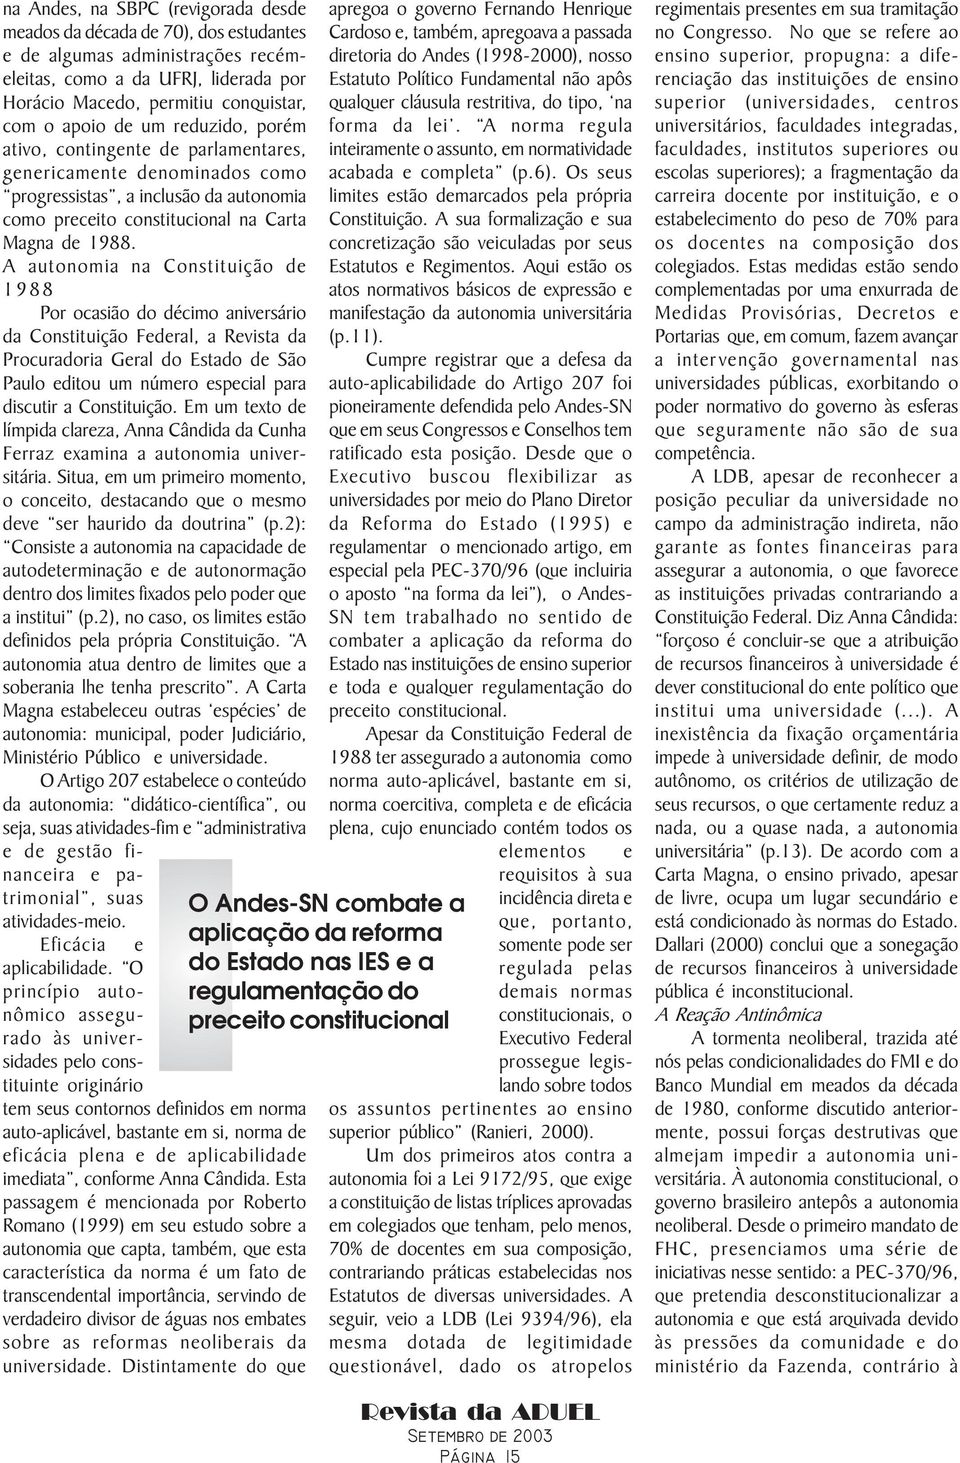 A autonomia na Constituição de 1988 Por ocasião do décimo aniversário da Constituição Federal, a Revista da Procuradoria Geral do Estado de São Paulo editou um número especial para discutir a